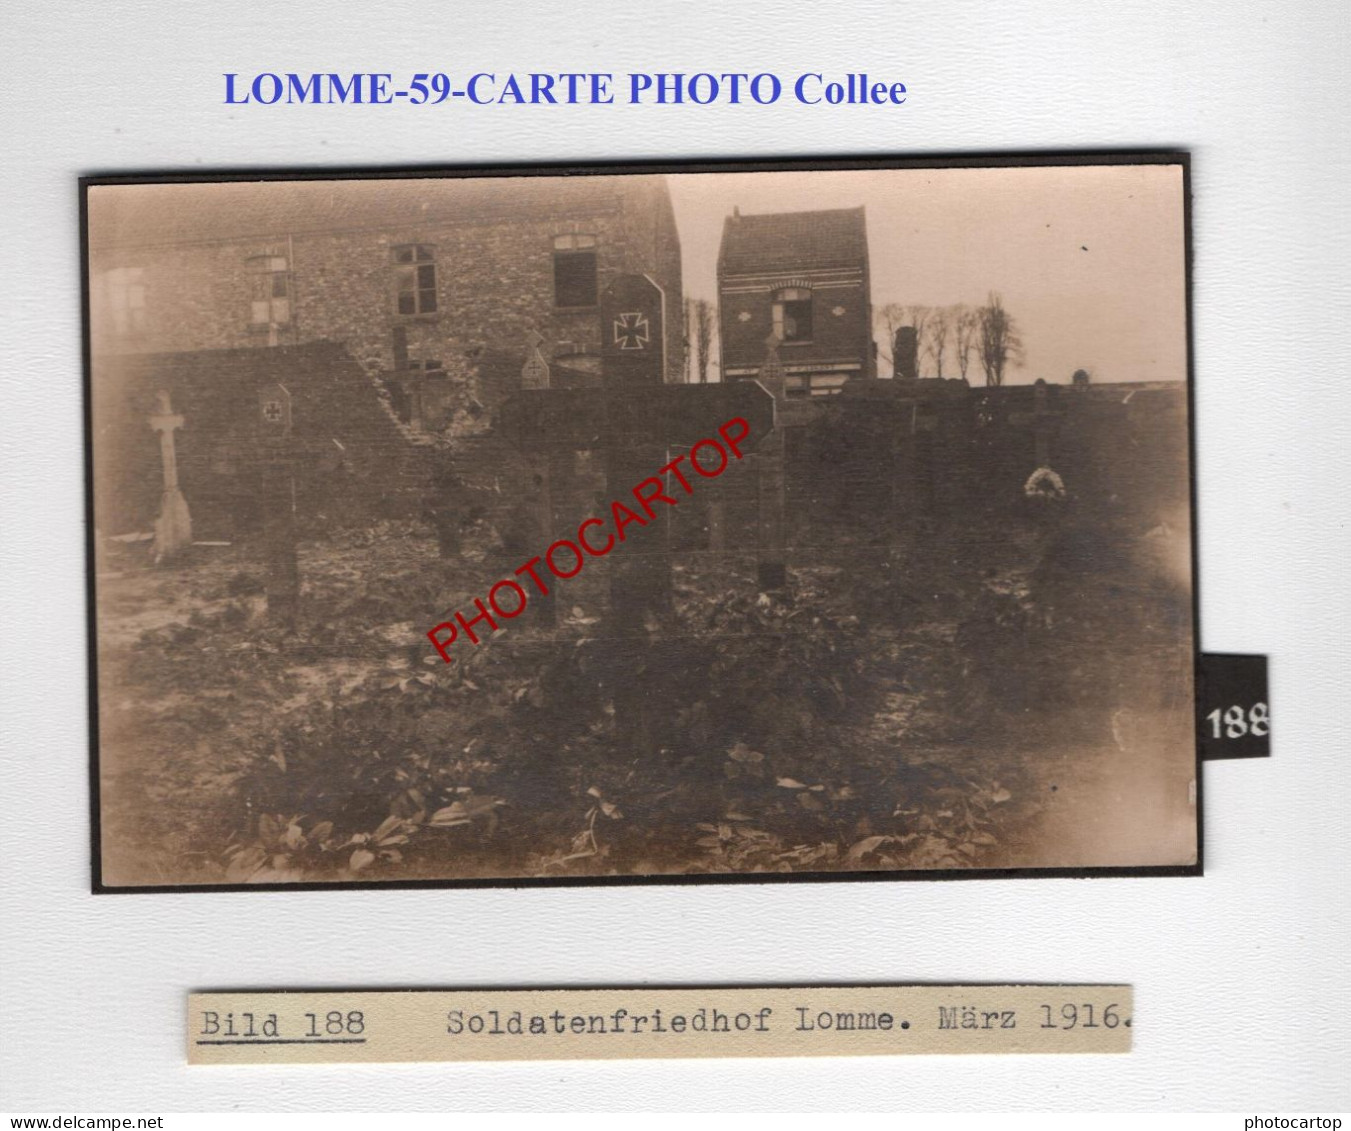 LOMME-59-Tombes-Cimetiere-CARTE PHOTO Allemande Collee-GUERRE 14-18-1 WK-MILITARIA- - Cimetières Militaires